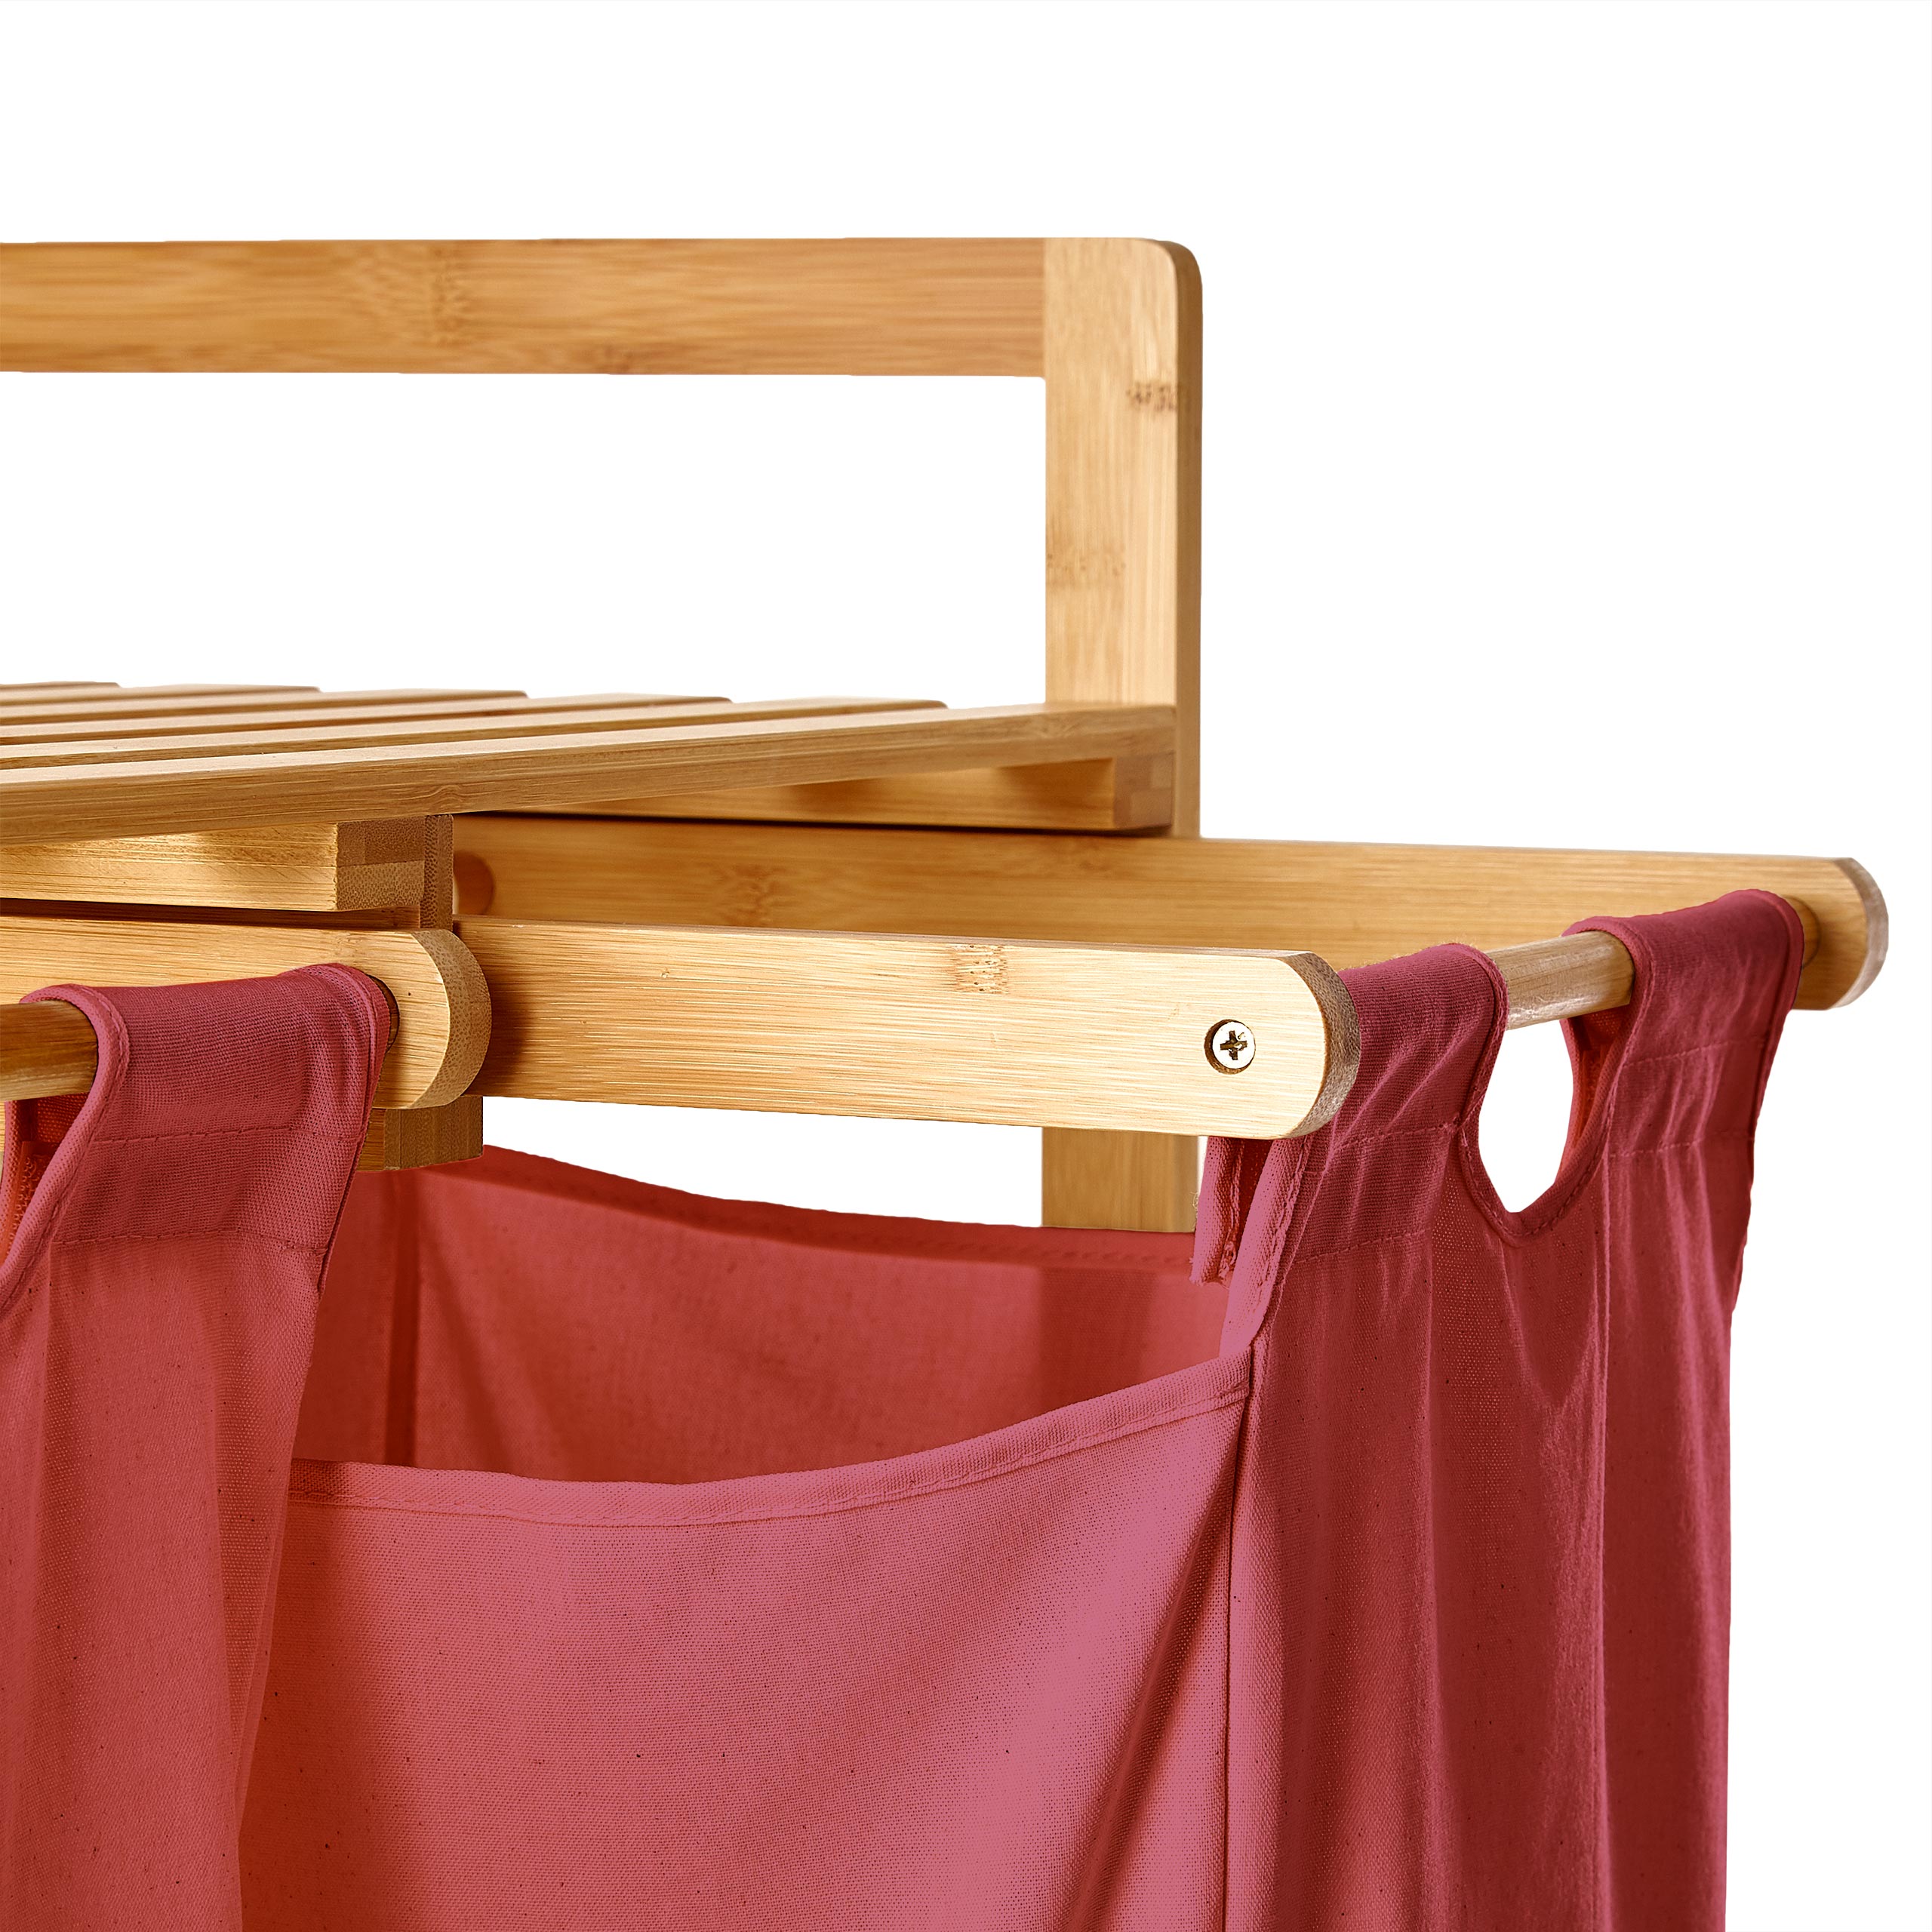 Bambus Wäschekorb mit 2 ausziehbaren Wäschesacken - 73 x 64 x 33 cm - Rosa